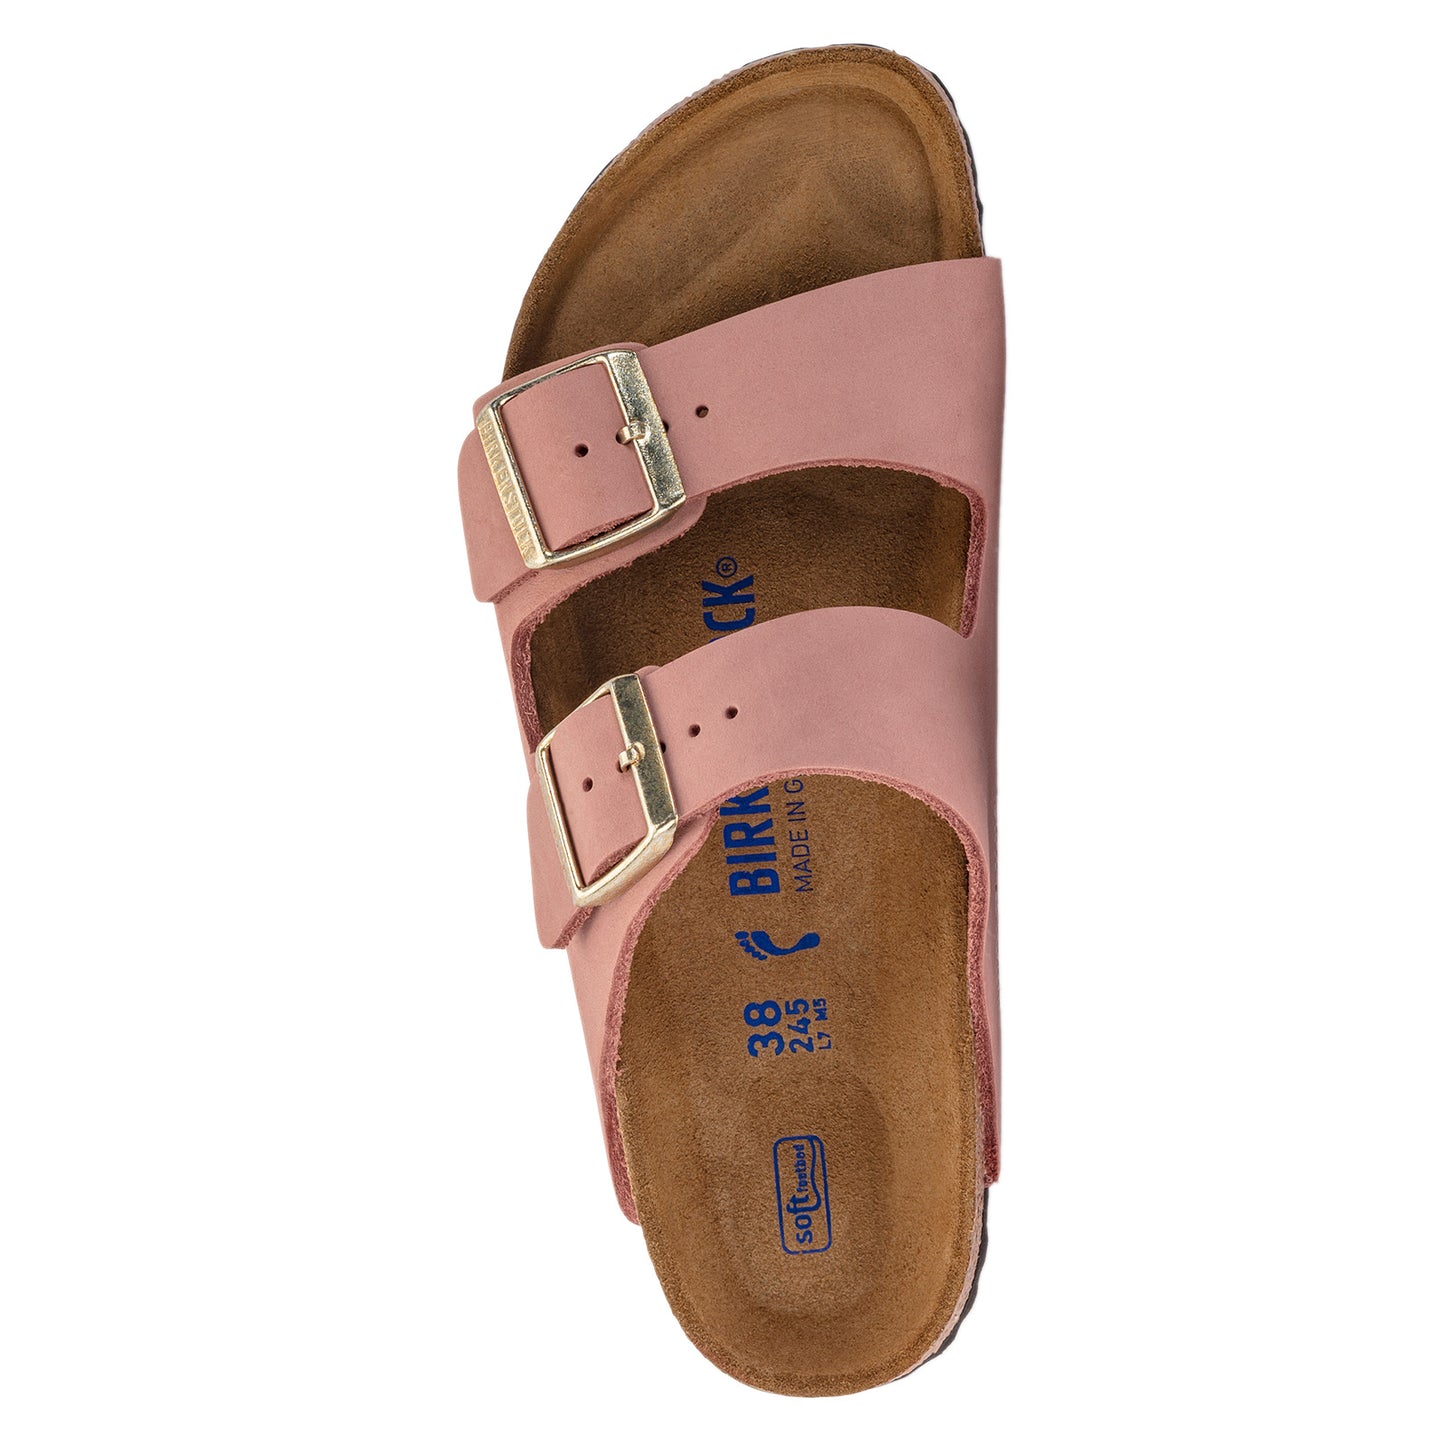 Peltz Shoes  Women's Birkenstock Arizona Soft Footbed Sandal - Narrow Width PINK 1024 219 N